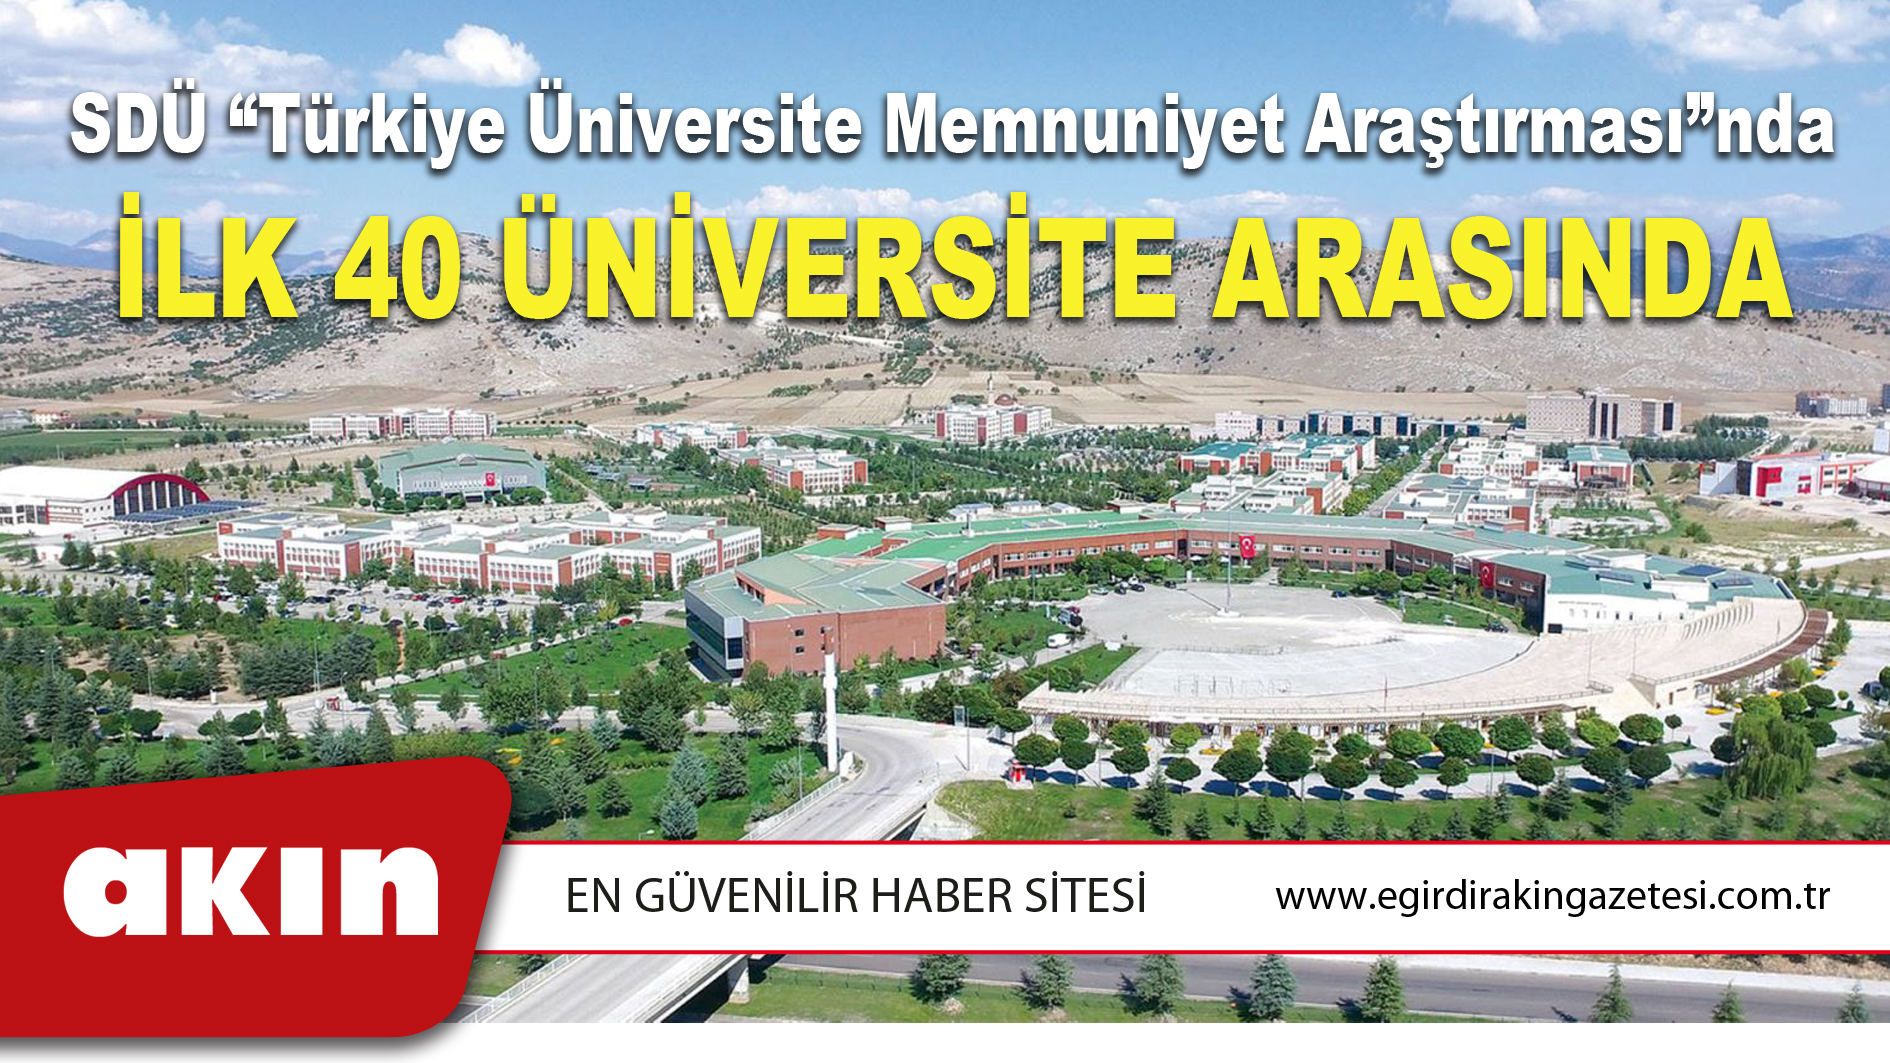 eğirdir haber,akın gazetesi,egirdir haberler,son dakika,SDÜ “Türkiye Üniversite Memnuniyet Araştırması”nda İlk 40 Üniversite Arasında